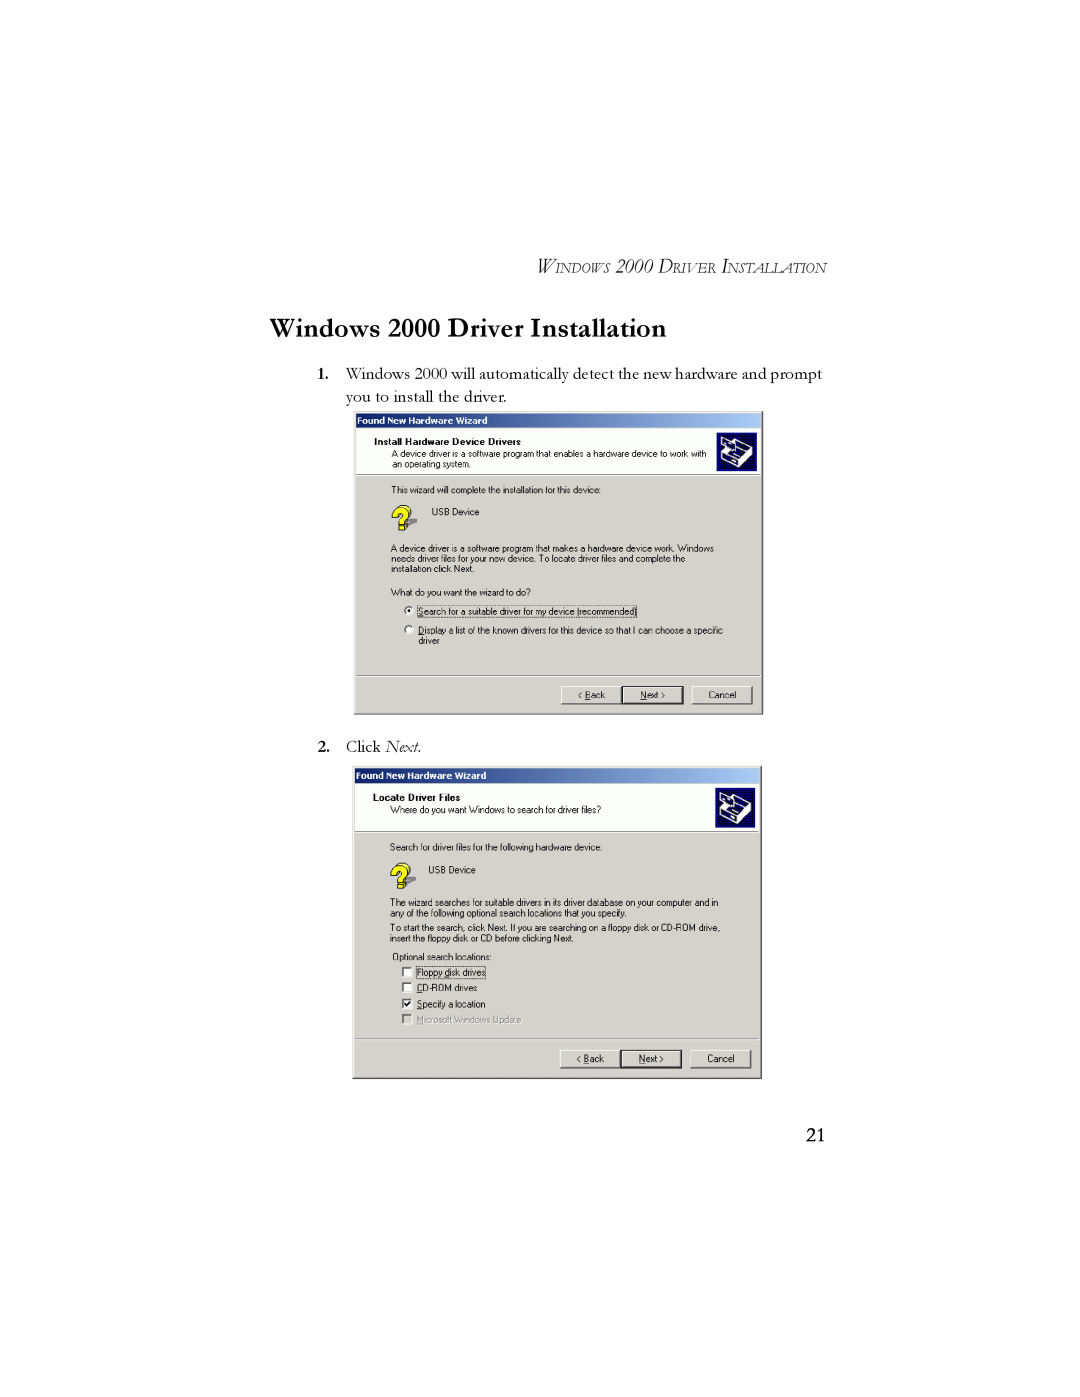 SMC Networks SMC2664W manual Windows 2000 Driver Installation, WINDOWS 2000 DRIVER INSTALLATION 